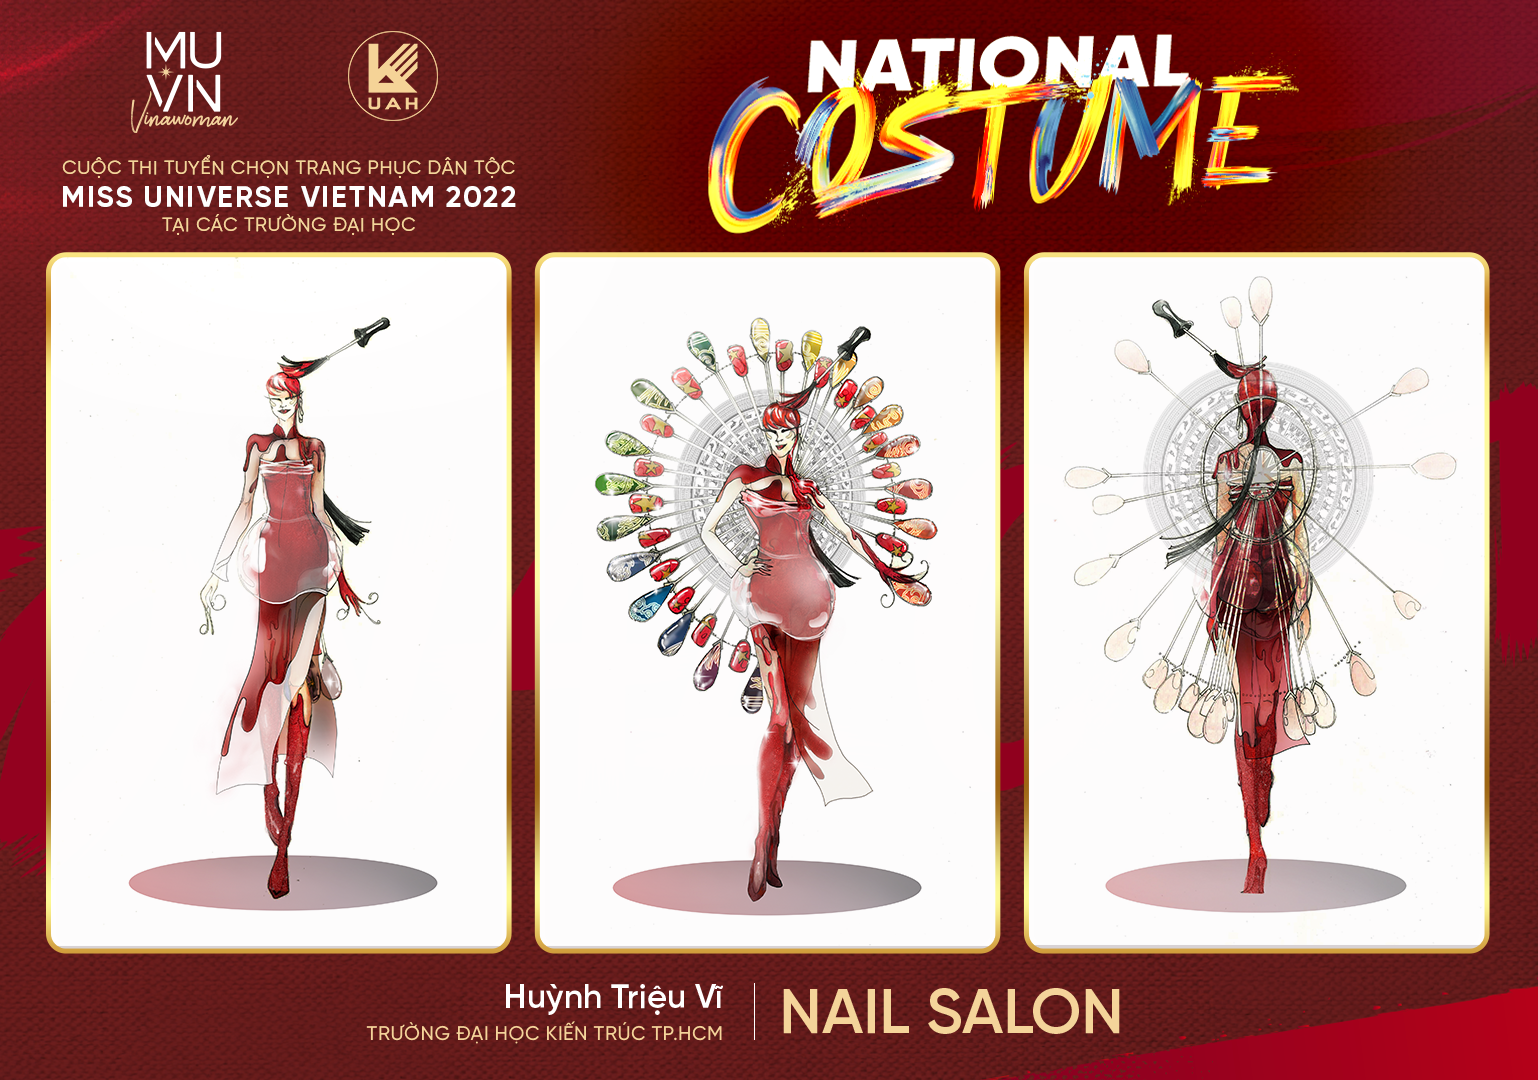 Trang phục dân tộc: Với mong muốn giữ gìn và phát triển văn hóa Việt Nam, chúng tôi chuyên cung cấp các loại trang phục dân tộc đa dạng, phong phú và độc đáo. Điều đặc biệt là chúng tôi sử dụng chất liệu chất lượng cao và thiết kế đẹp mắt để mang đến cho bạn một trải nghiệm hoàn toàn mới lạ.